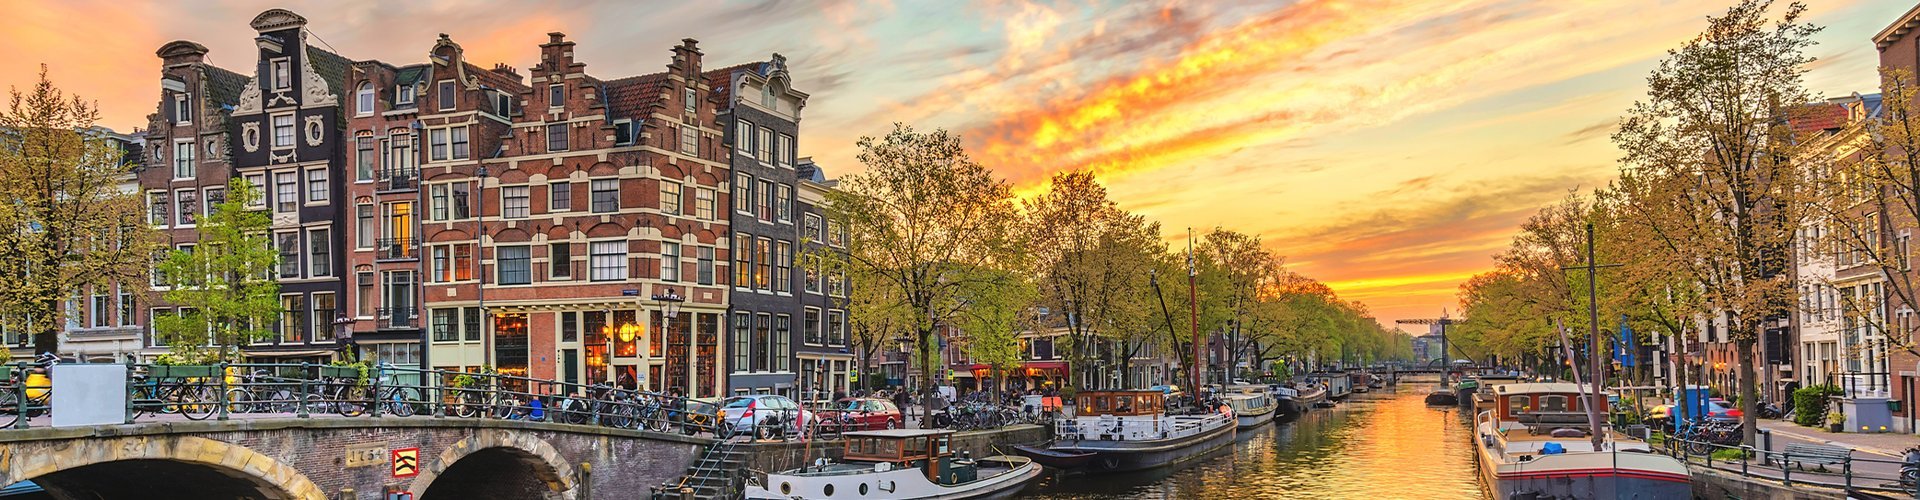 Top Sehenswürdigkeiten für Familien in Amsterdam